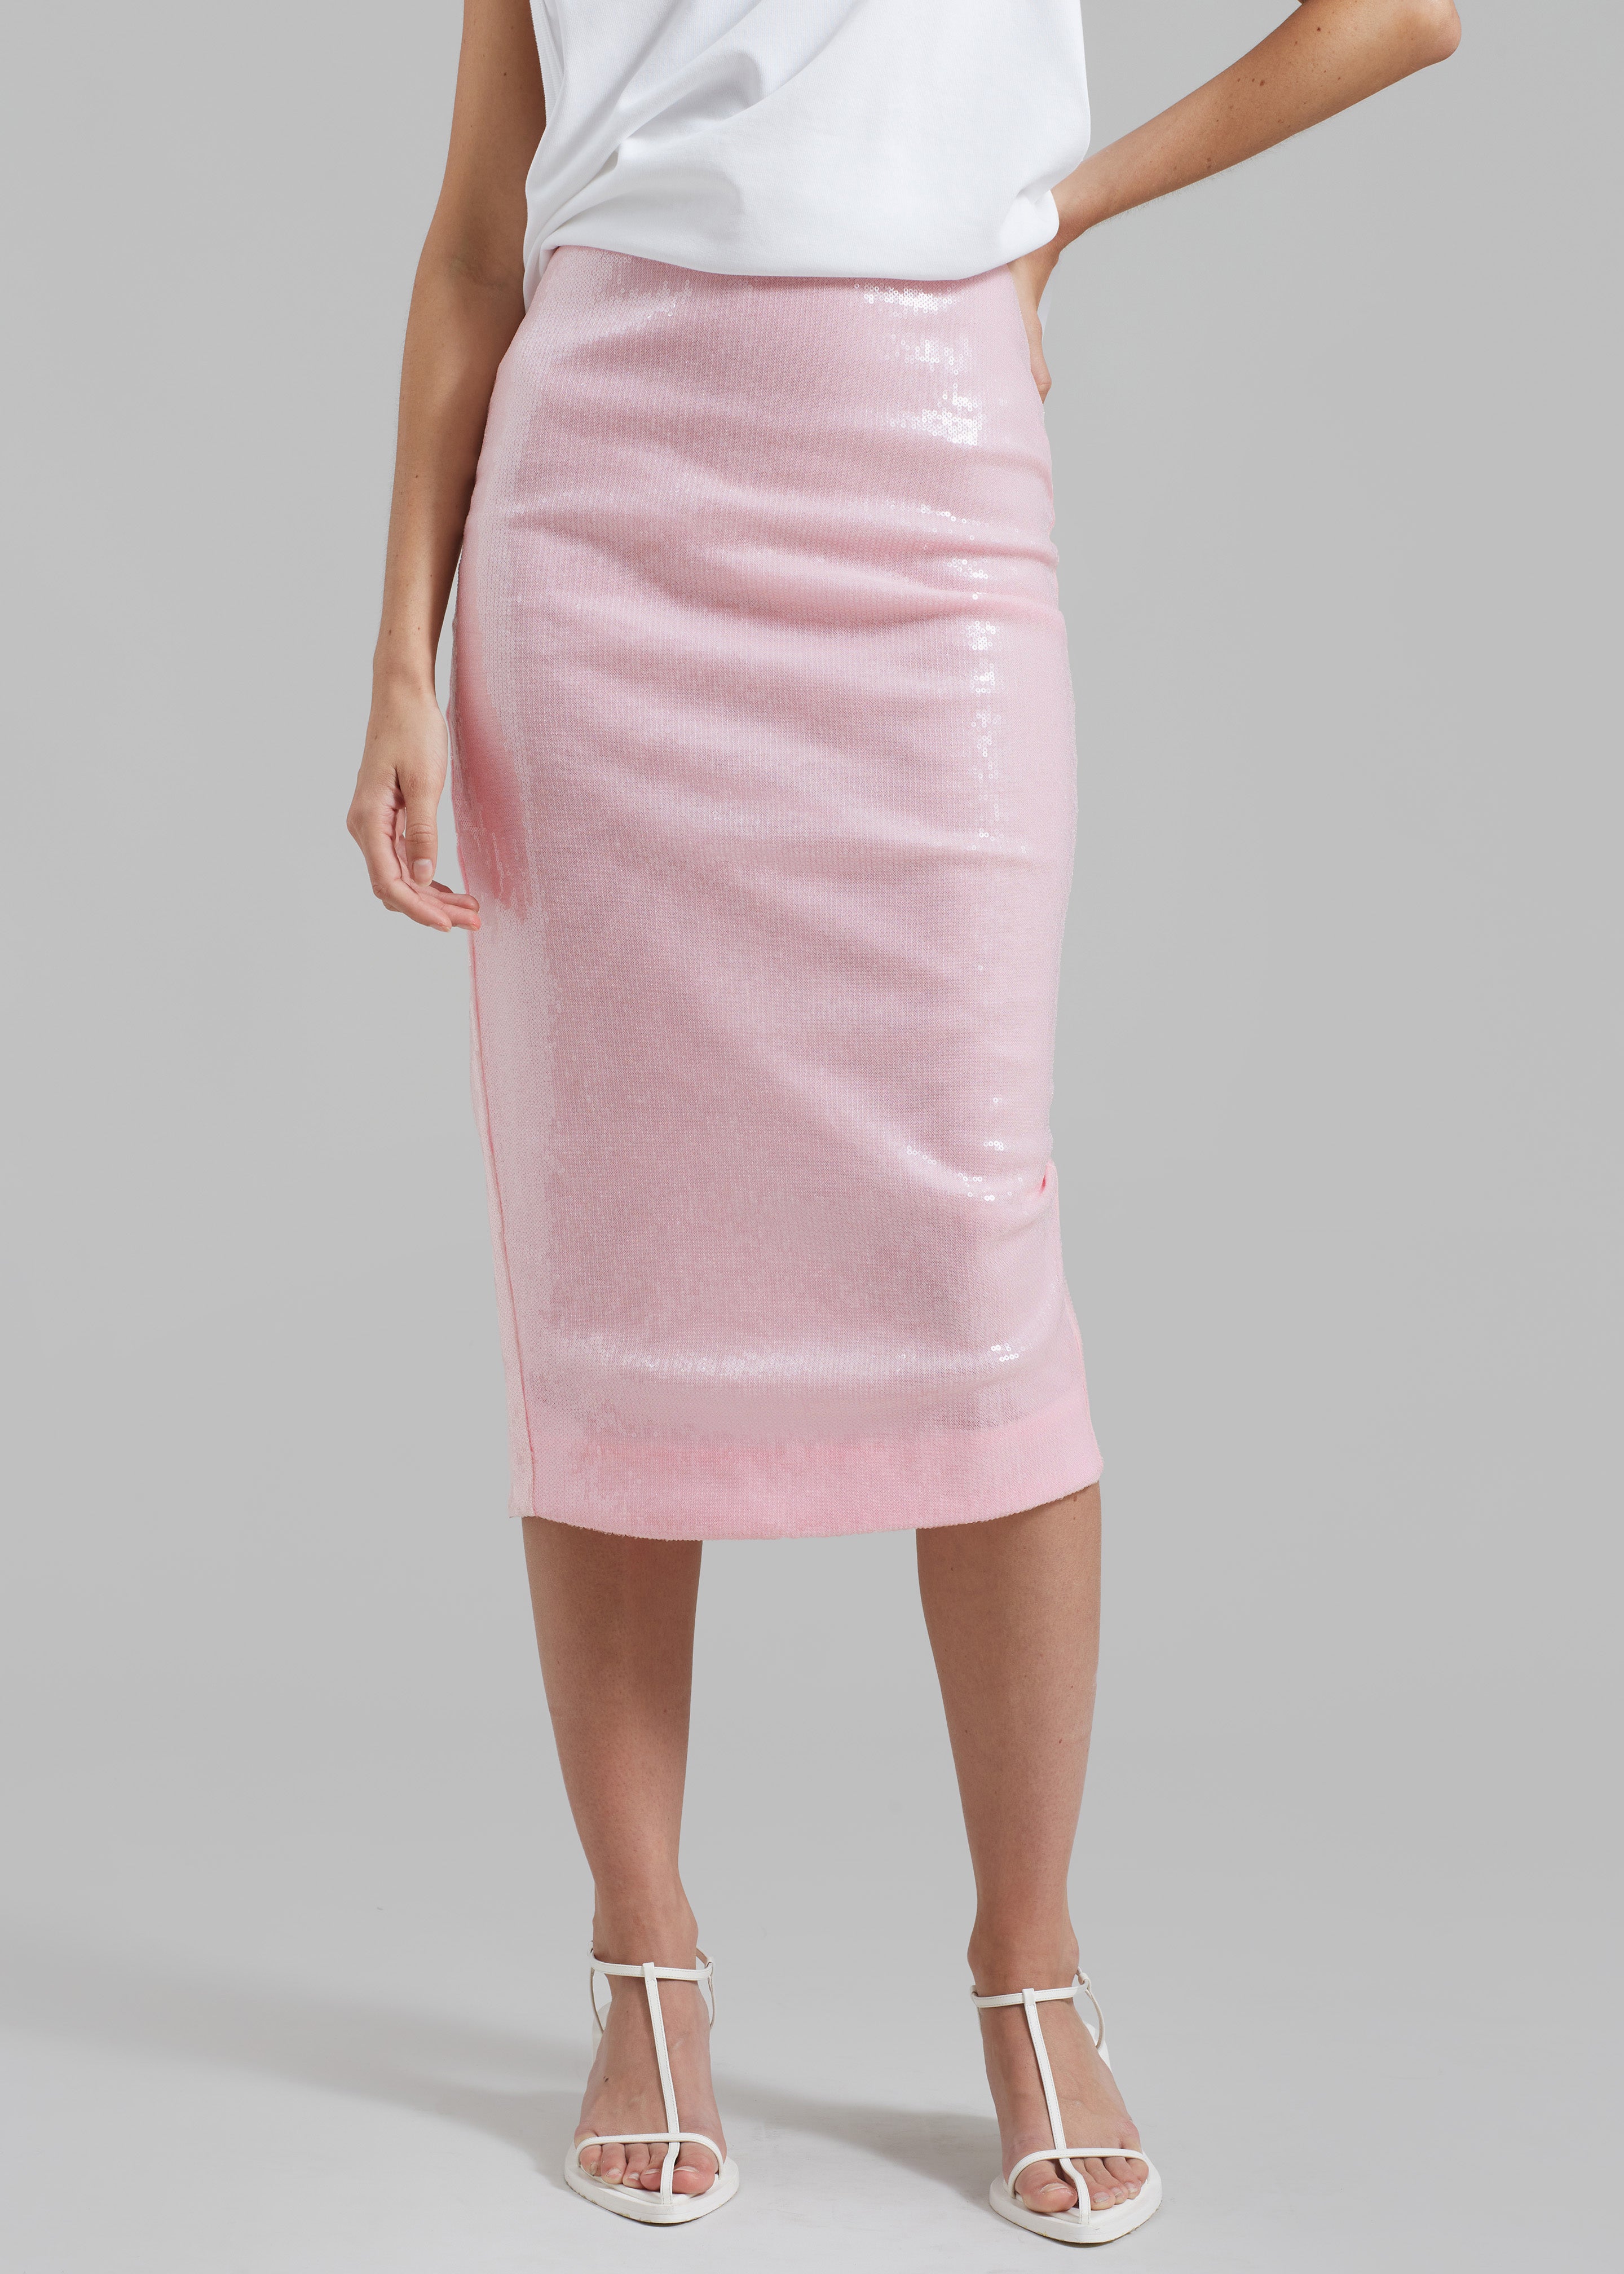 Sequins Pencil Skirt